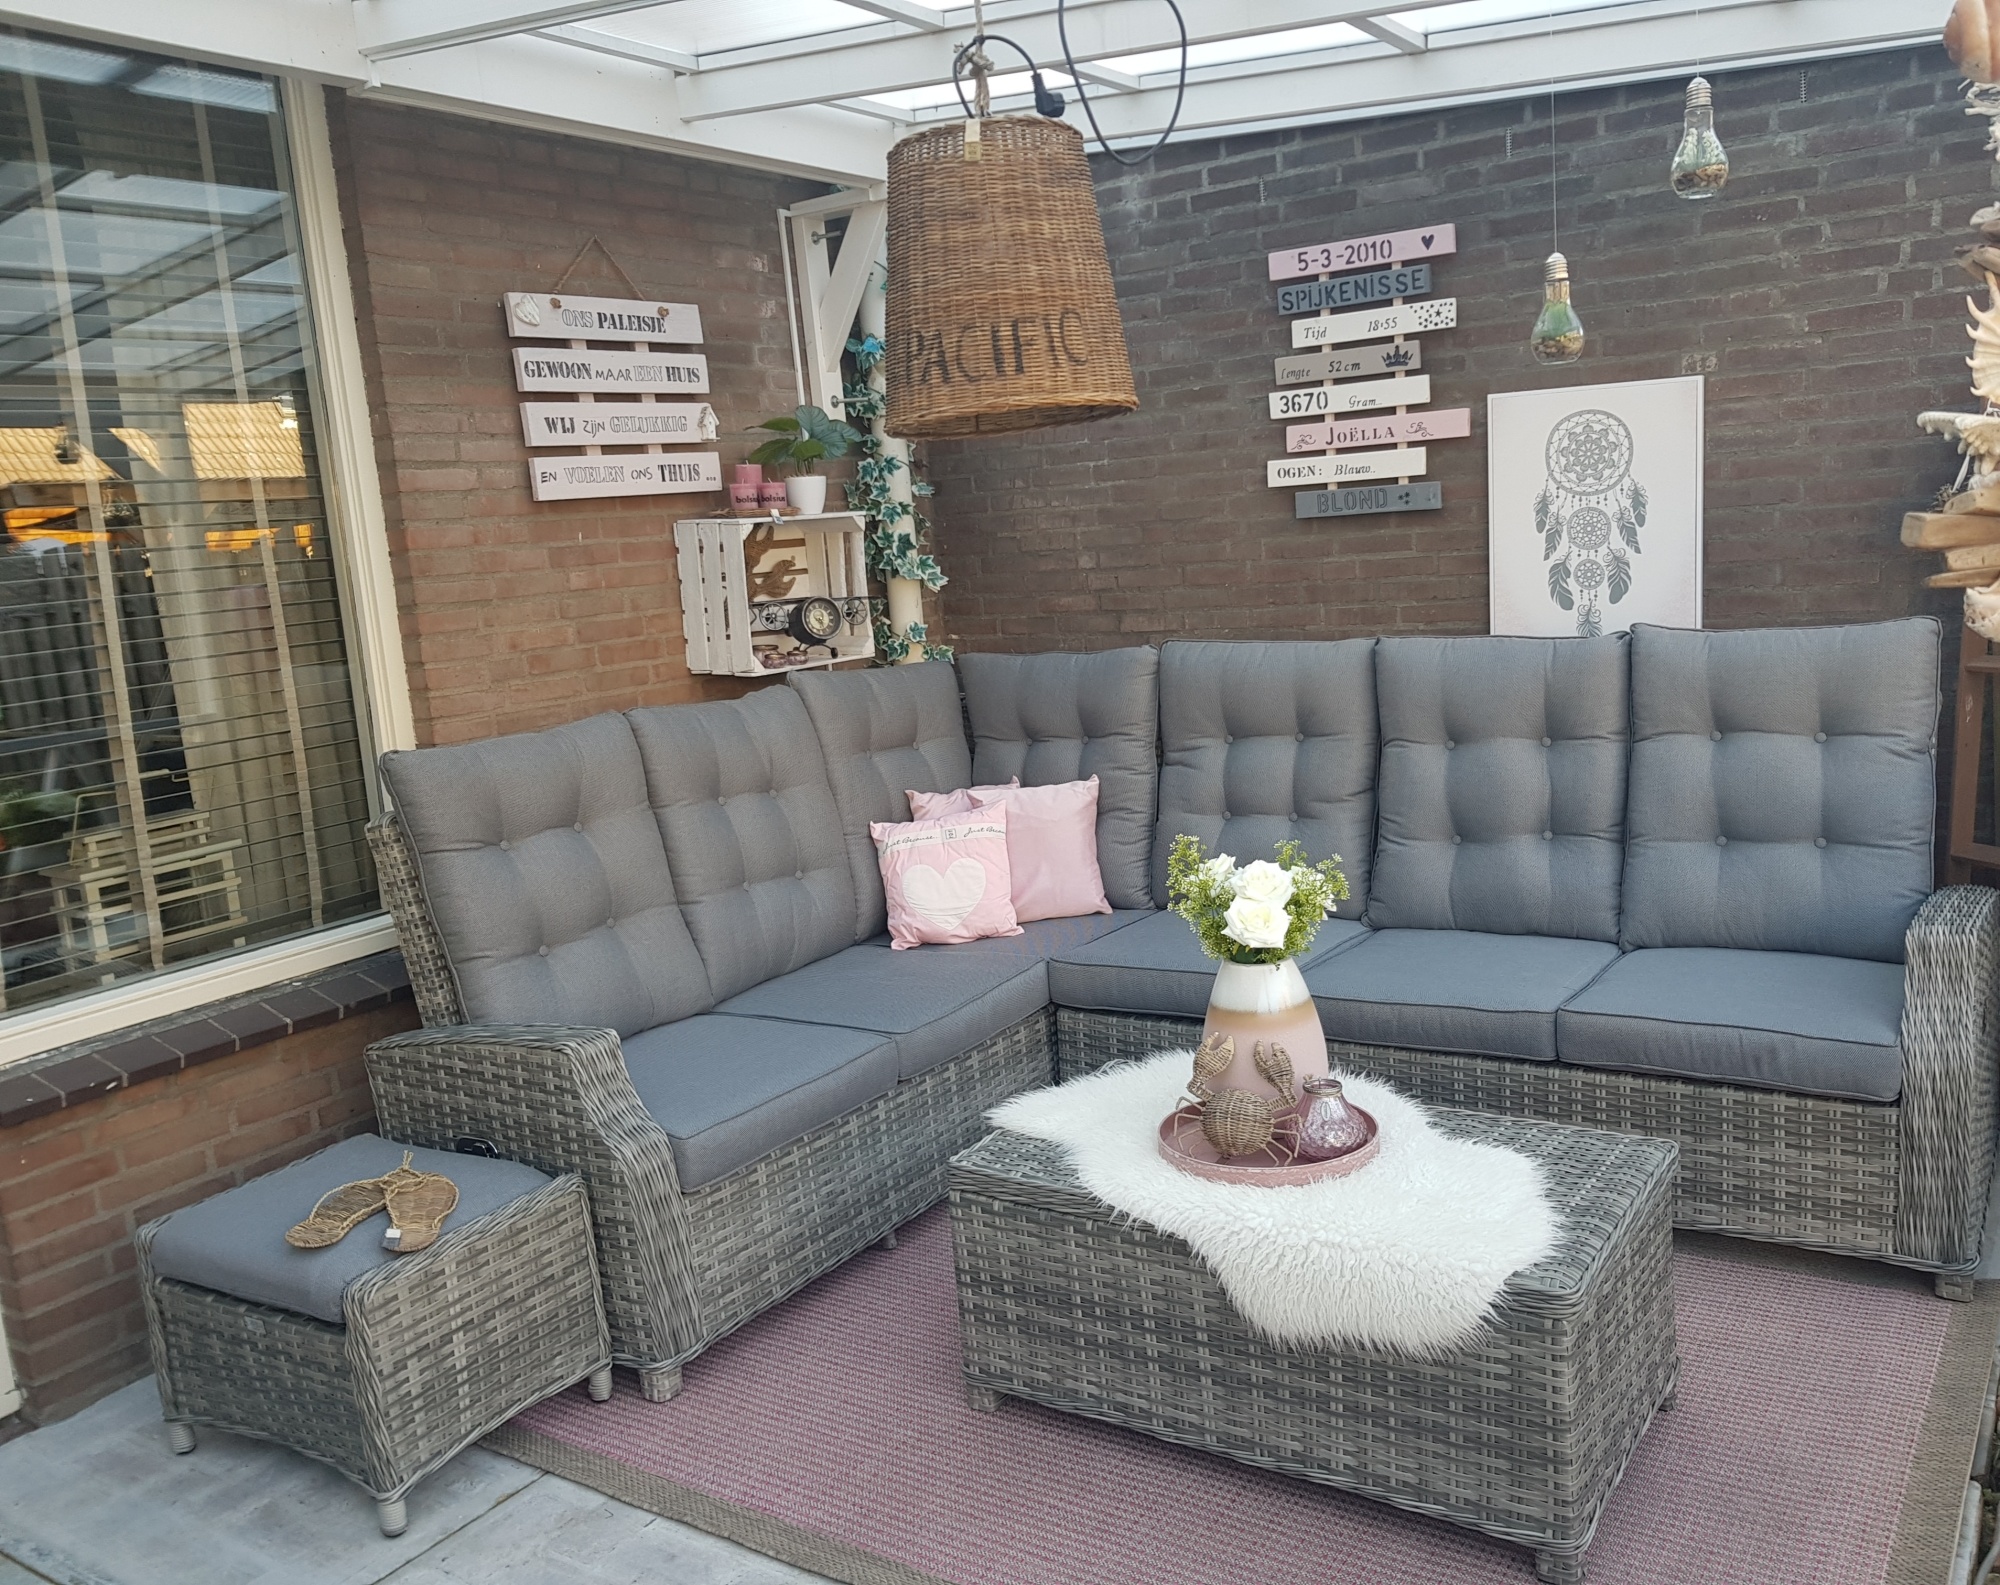 Relaxen op je lounge hoekbank buiten - AVH Outdoor Tuinmeubelen